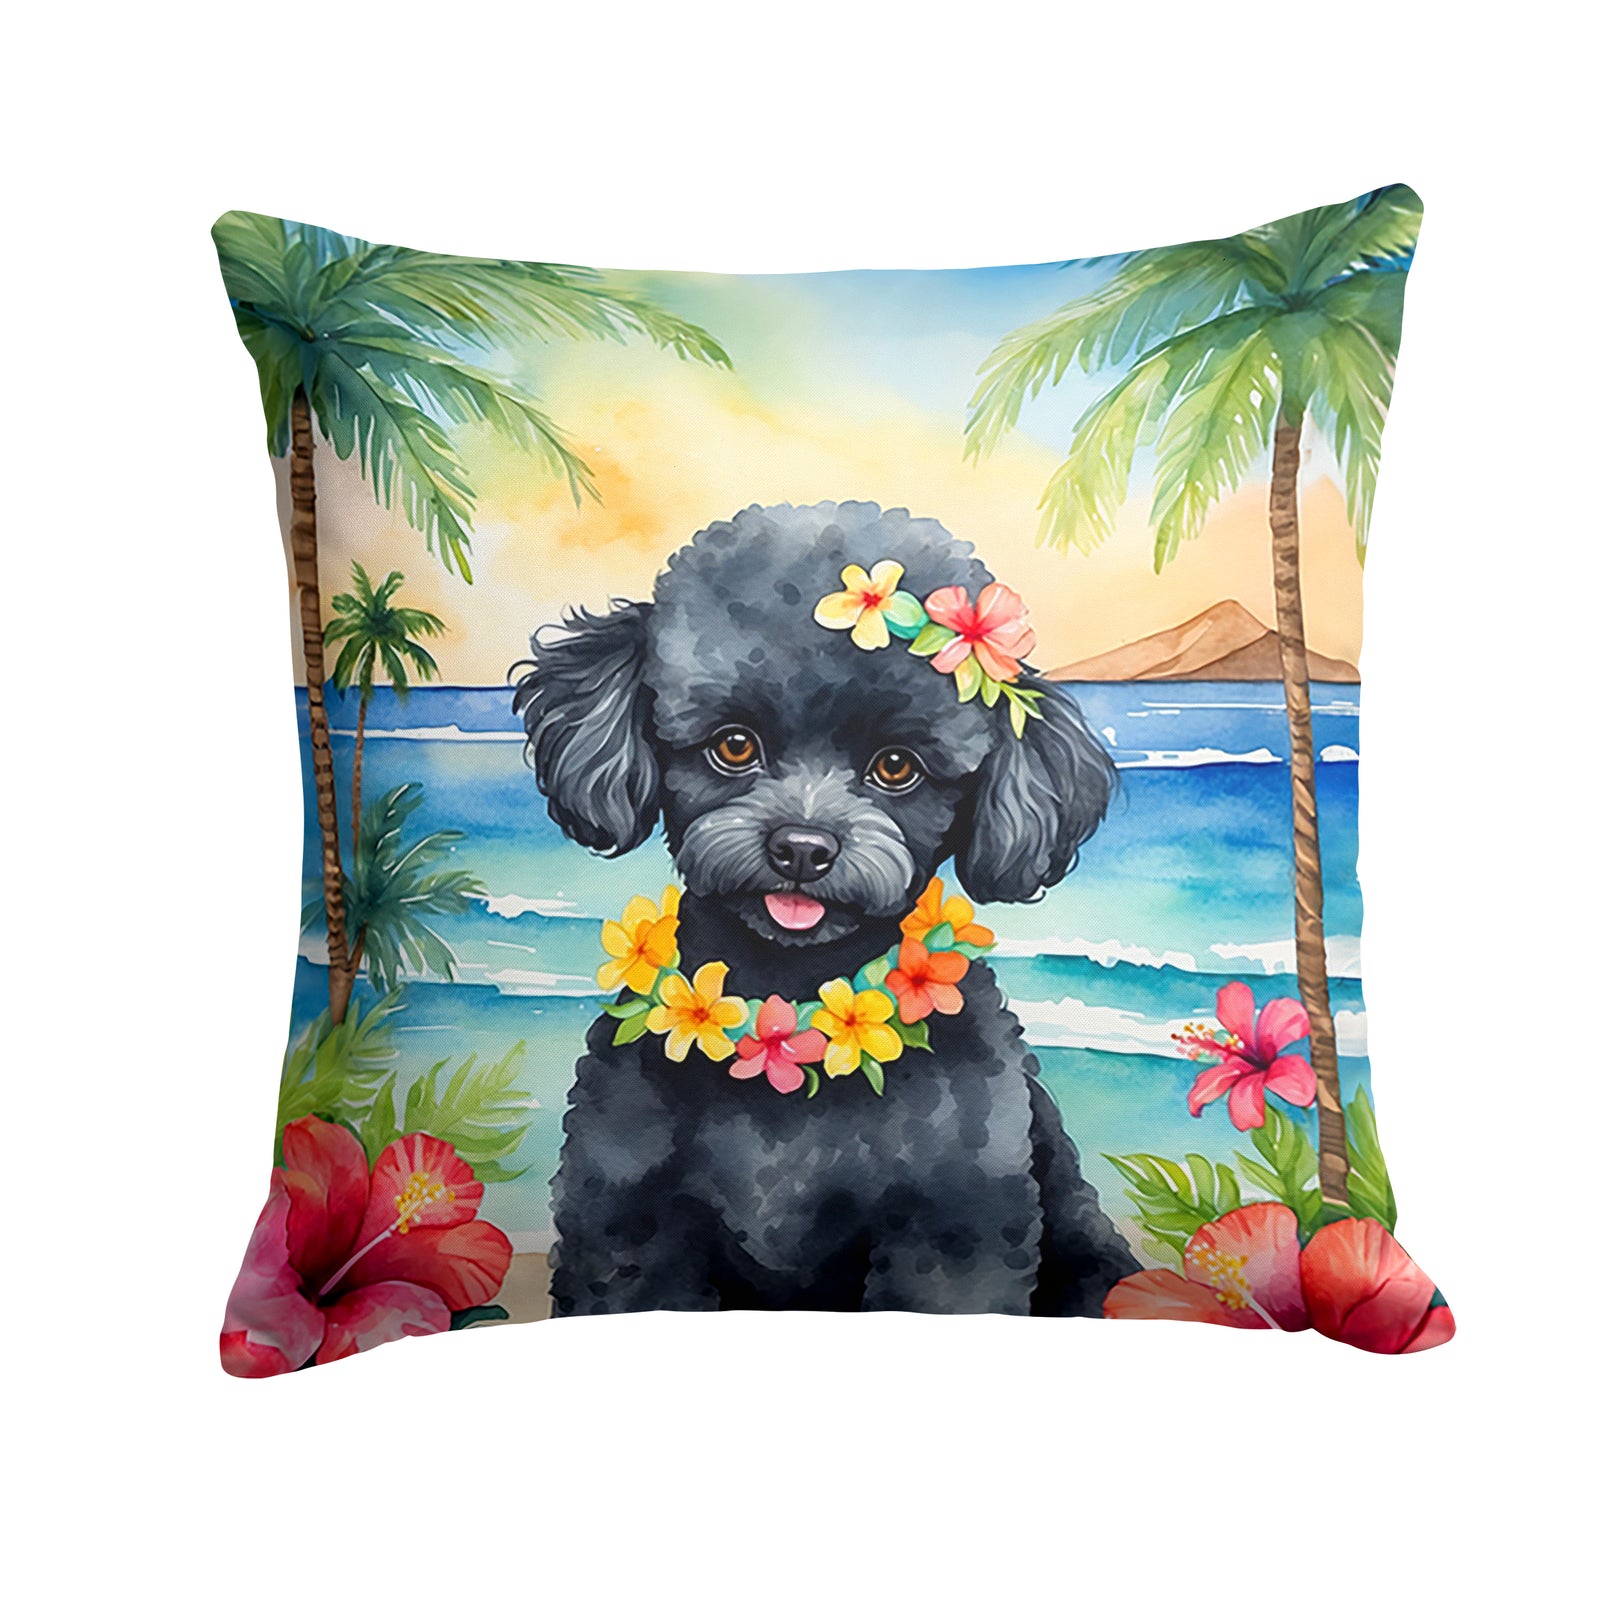 Buy this Black Poodle Luau Throw Pillow